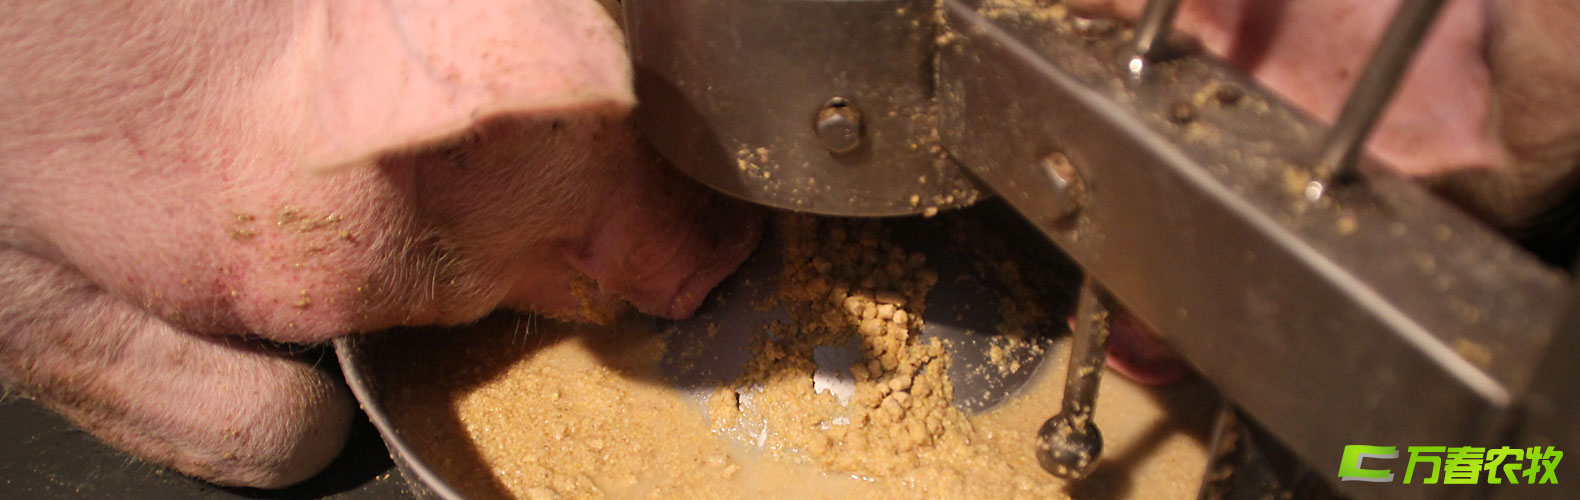 豬用濕拌飼料自動飼喂器與系統-四川成都萬春農牧機械